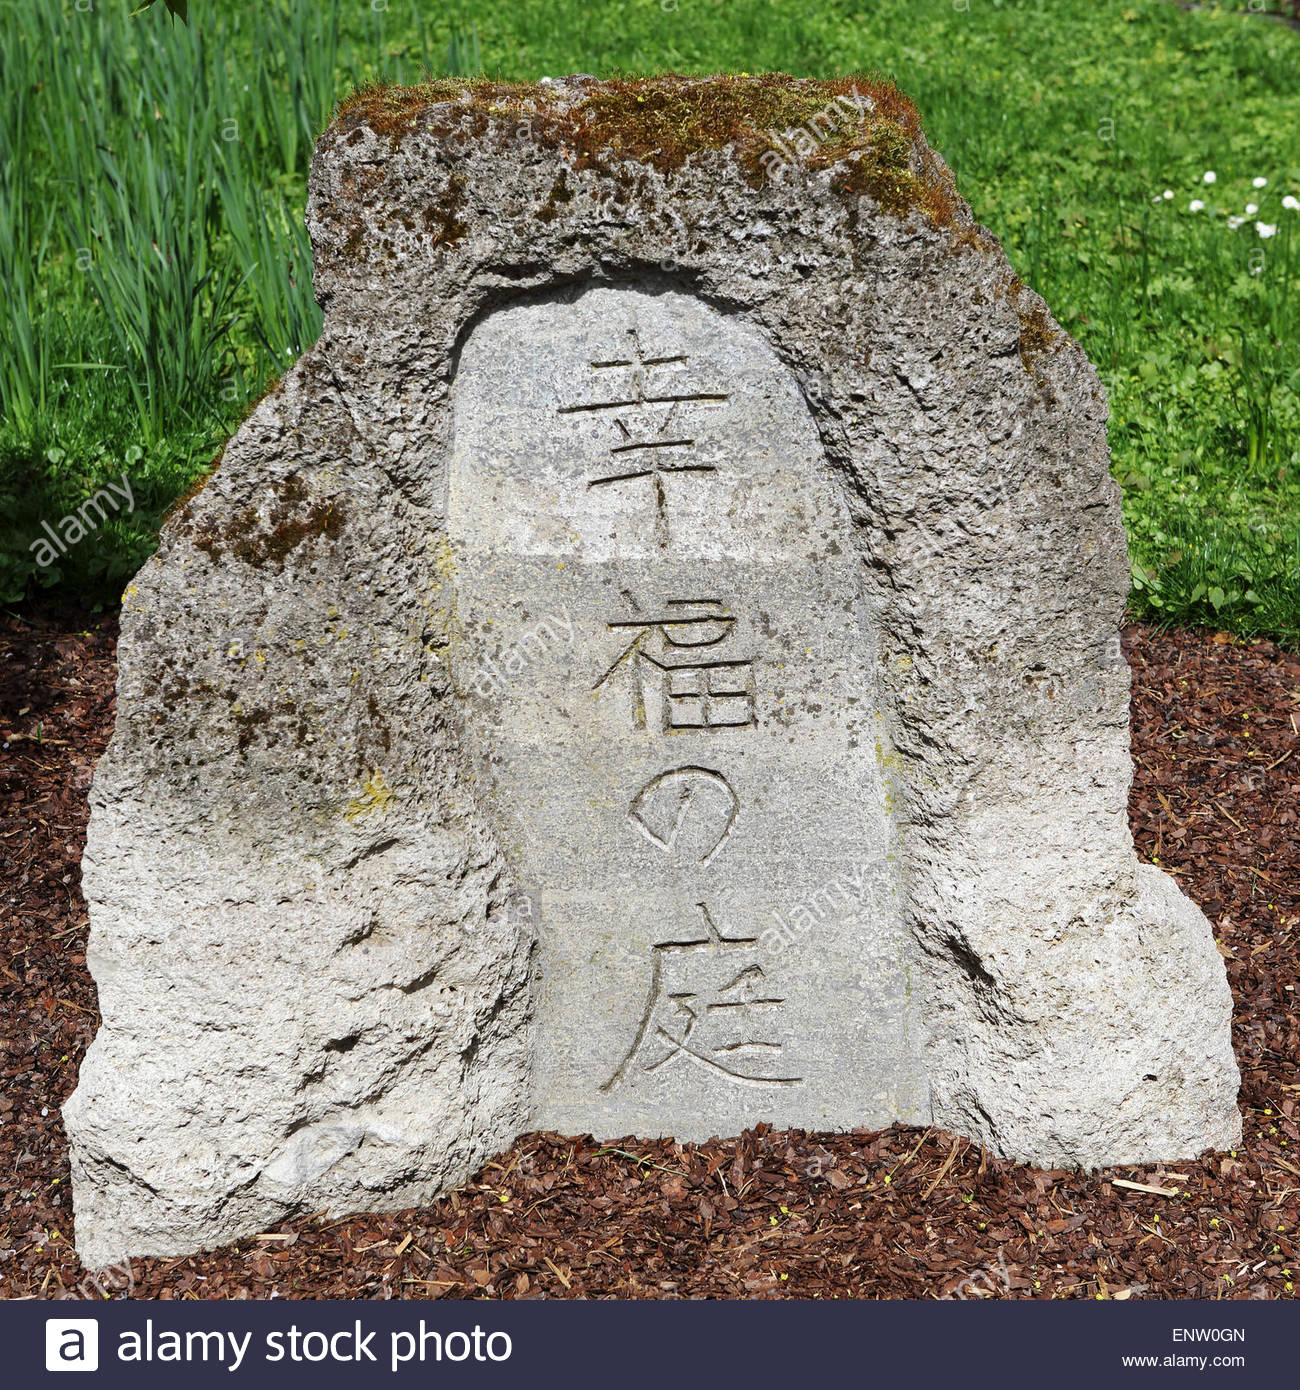 Bad Langensalza Japanischer Garten Best Of Inscribed Stone Stock S & Inscribed Stone Stock